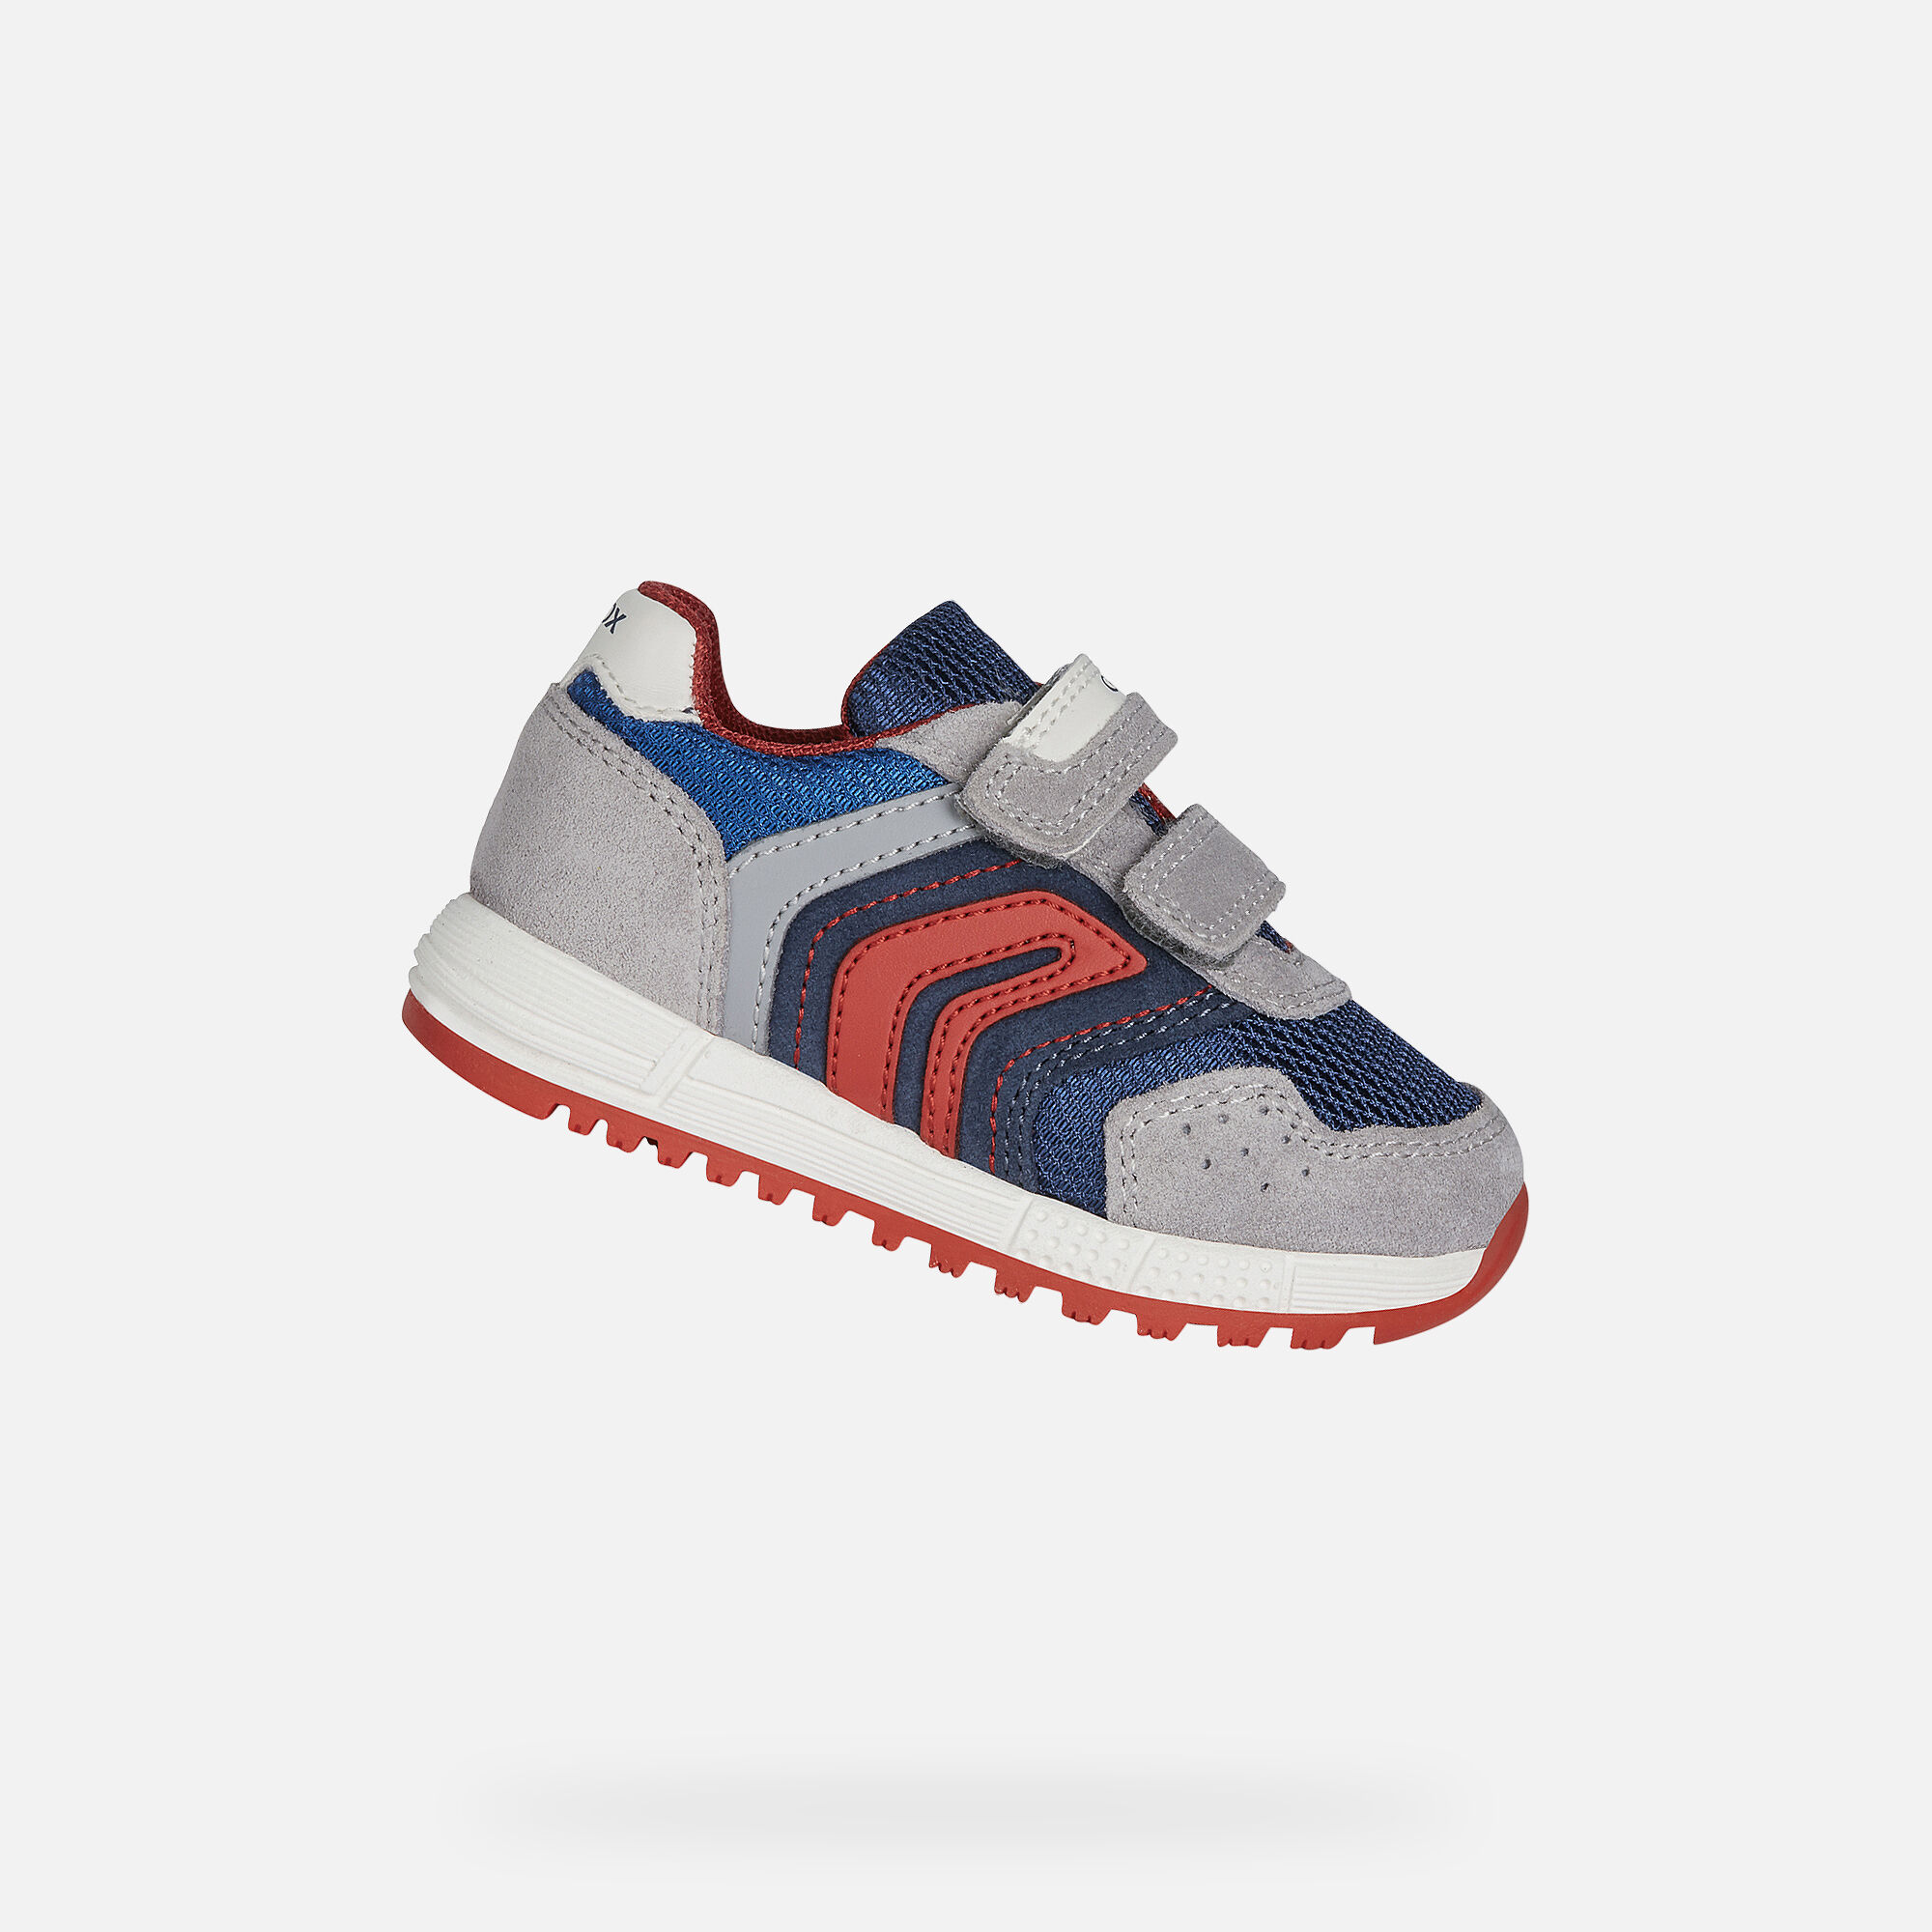 retro baby sneakers